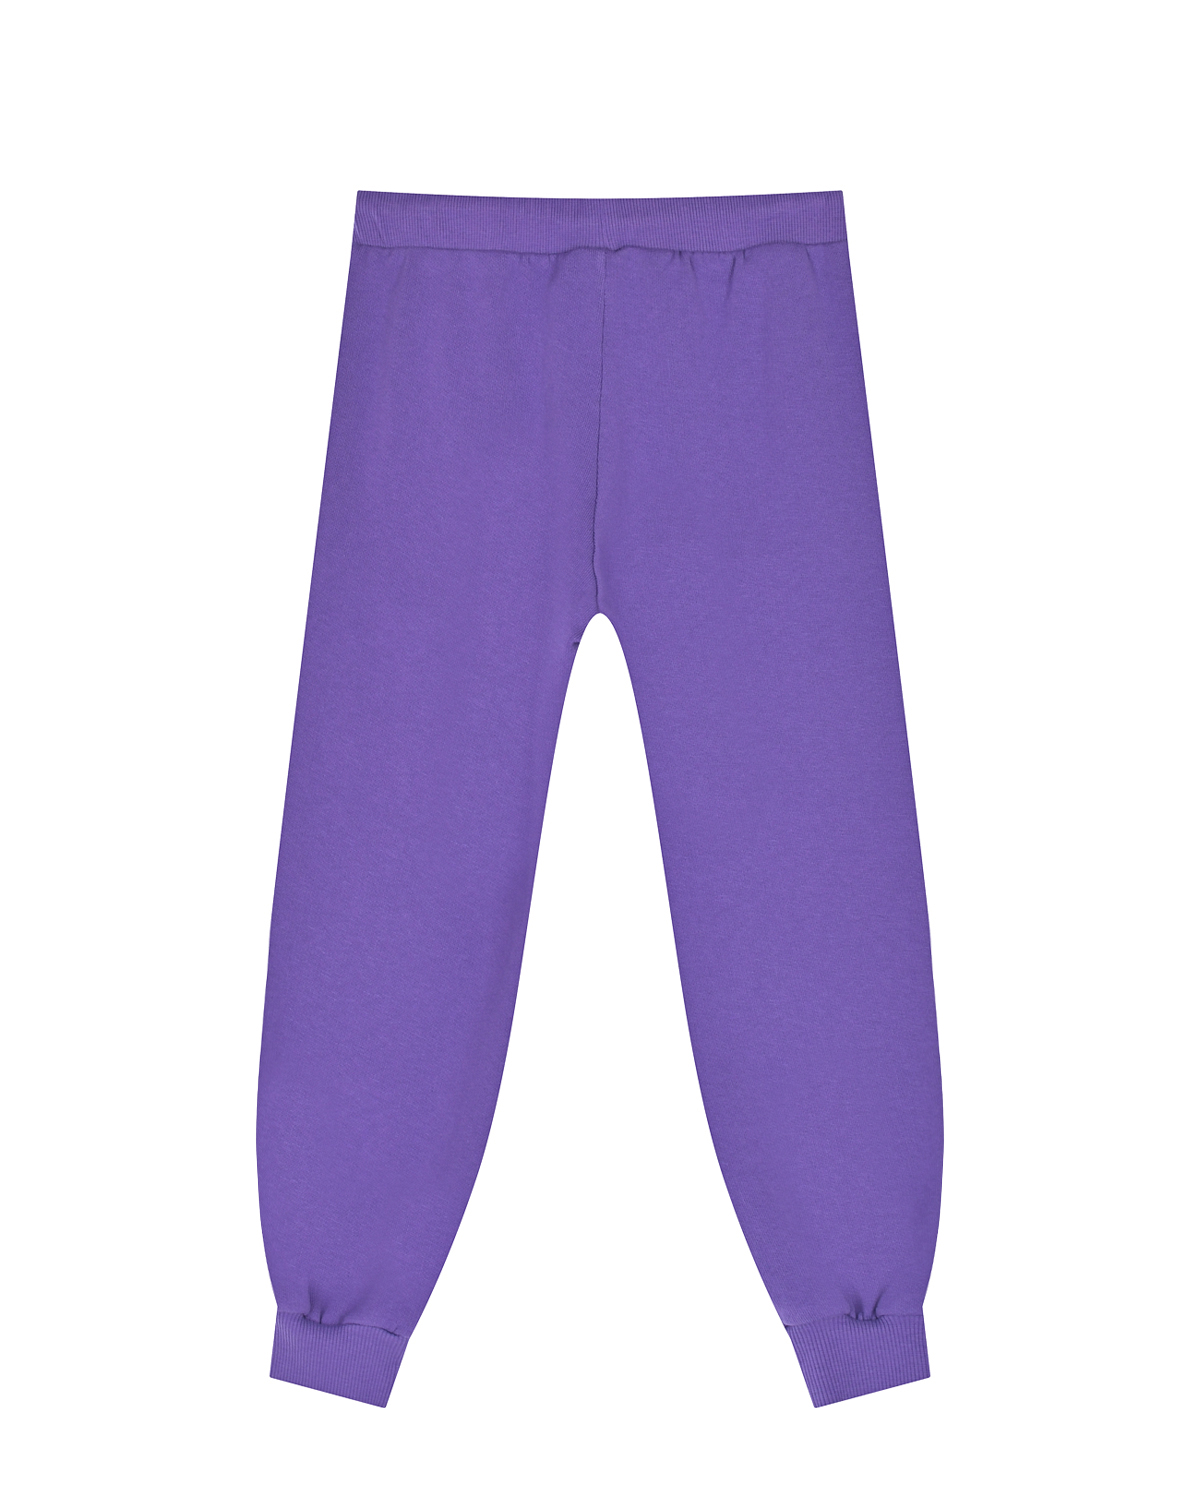 Фиолетовые брюки с принтом "лошадь" Mini Rodini детские, размер 92, цвет фиолетовый - фото 2